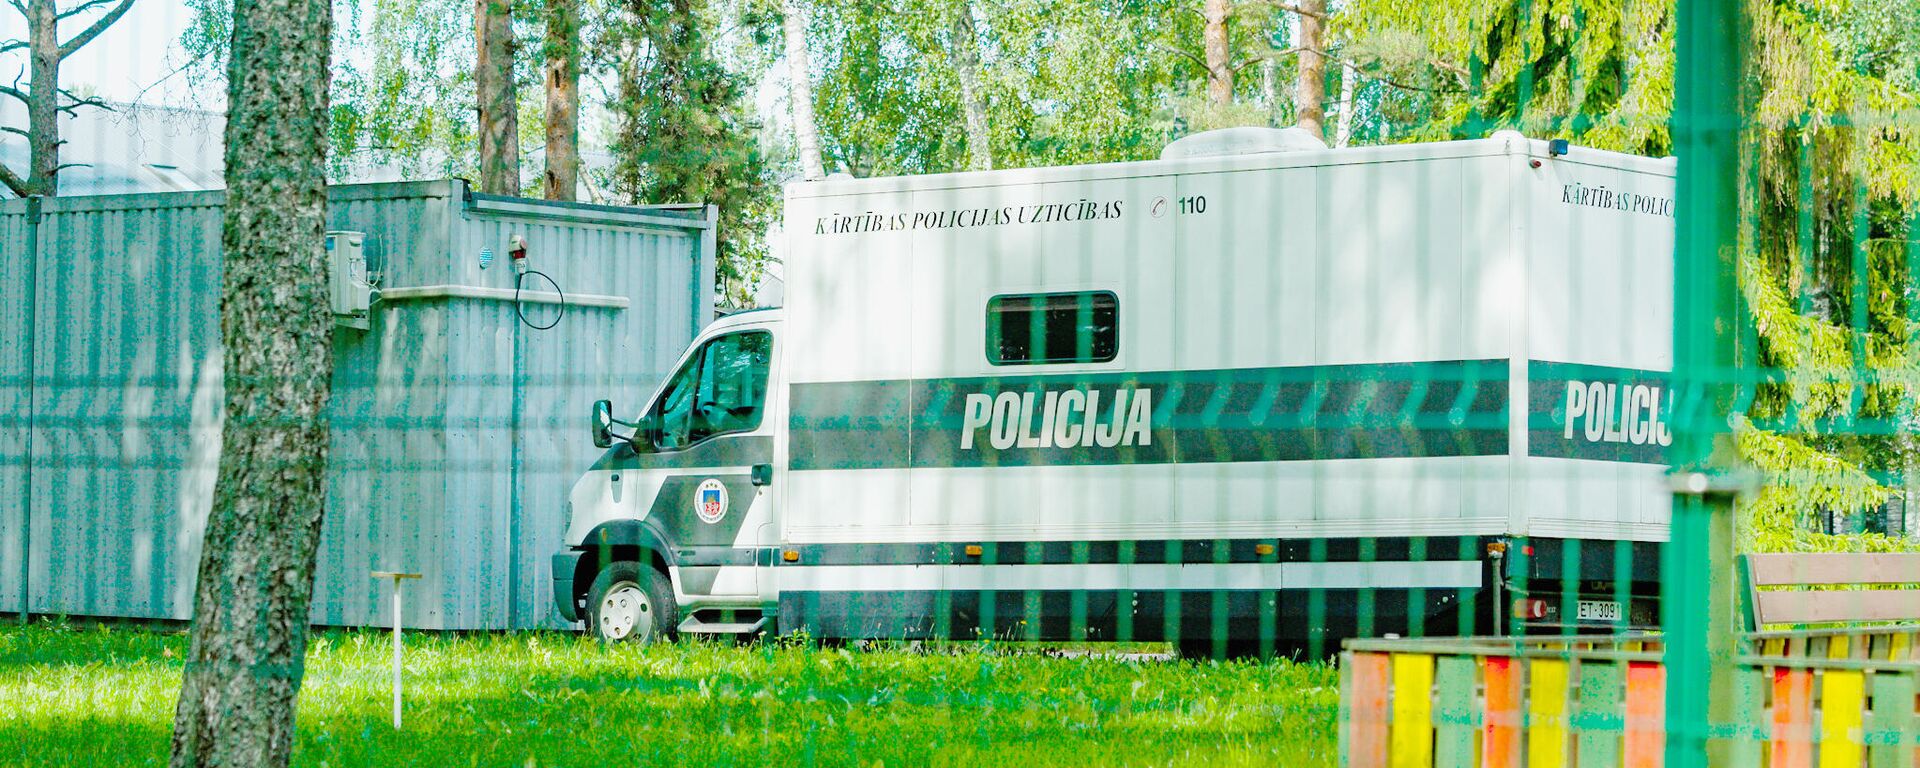 Полицейская машина для перевозки задержанных в Центре размещения беженцев в Муцениеки - Sputnik Латвия, 1920, 08.09.2021